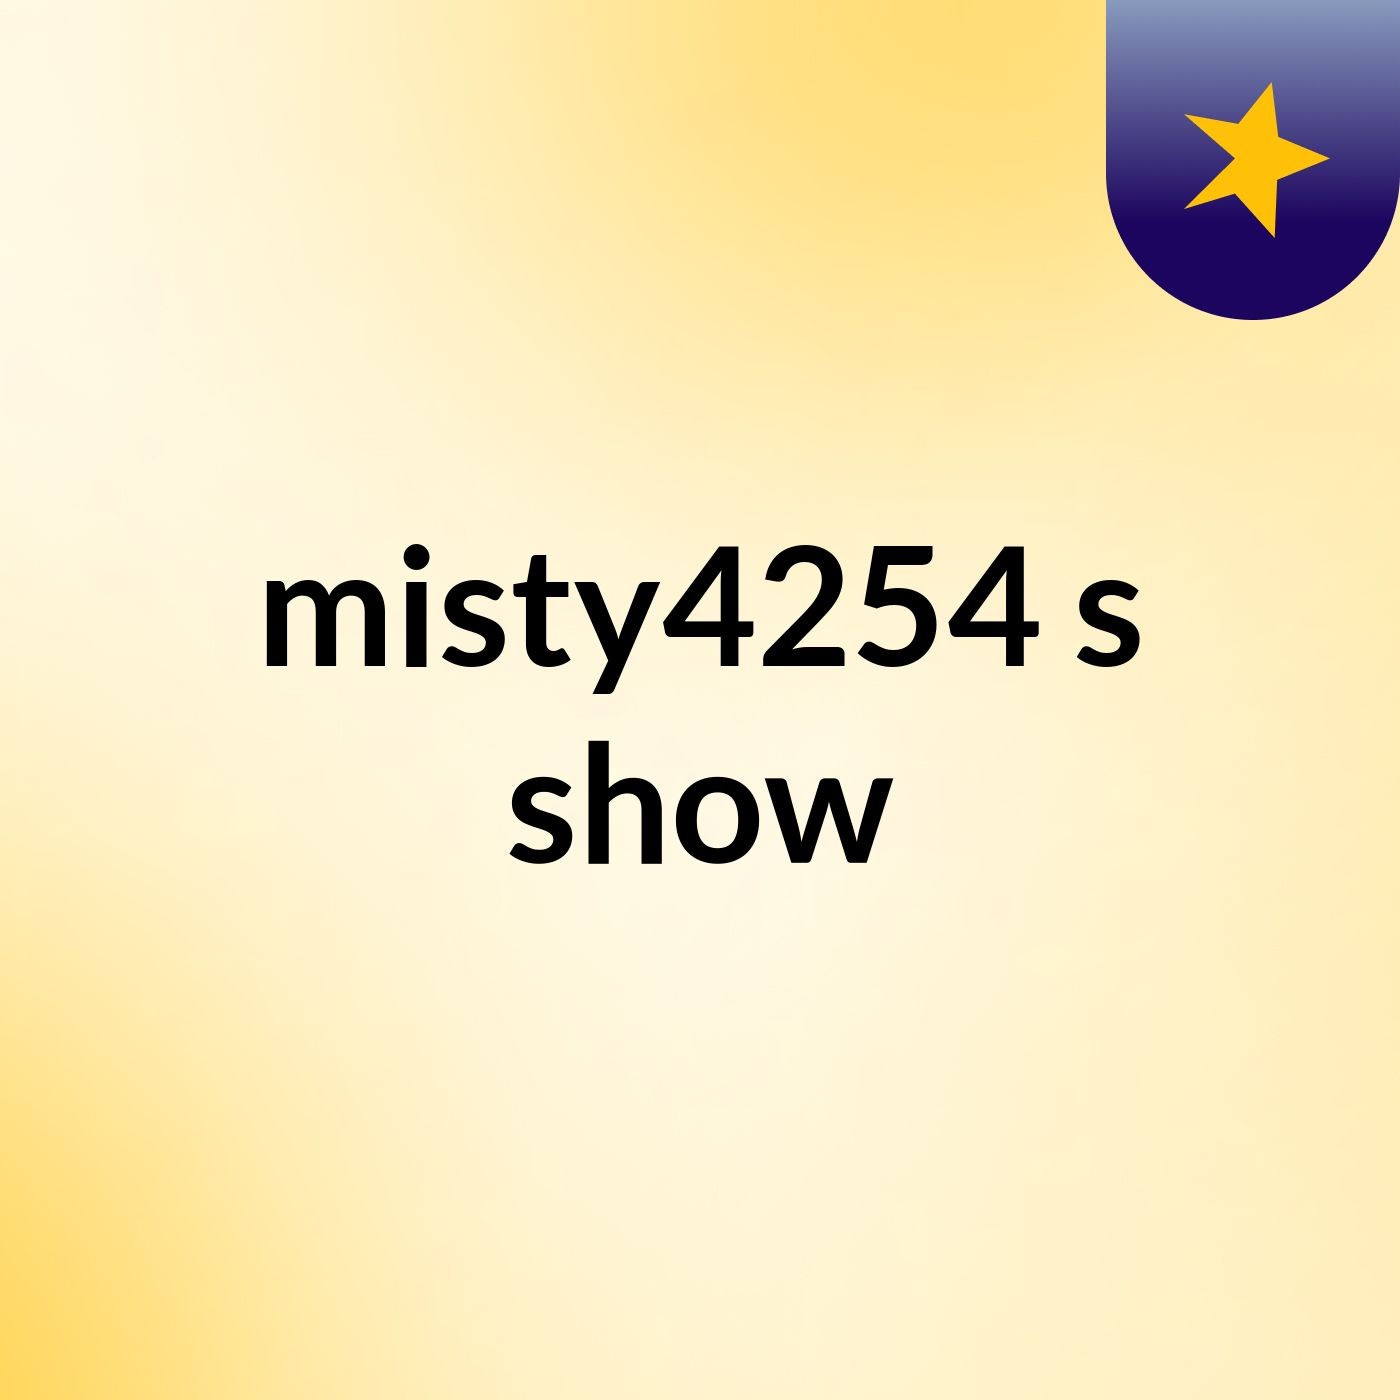 misty4254's show